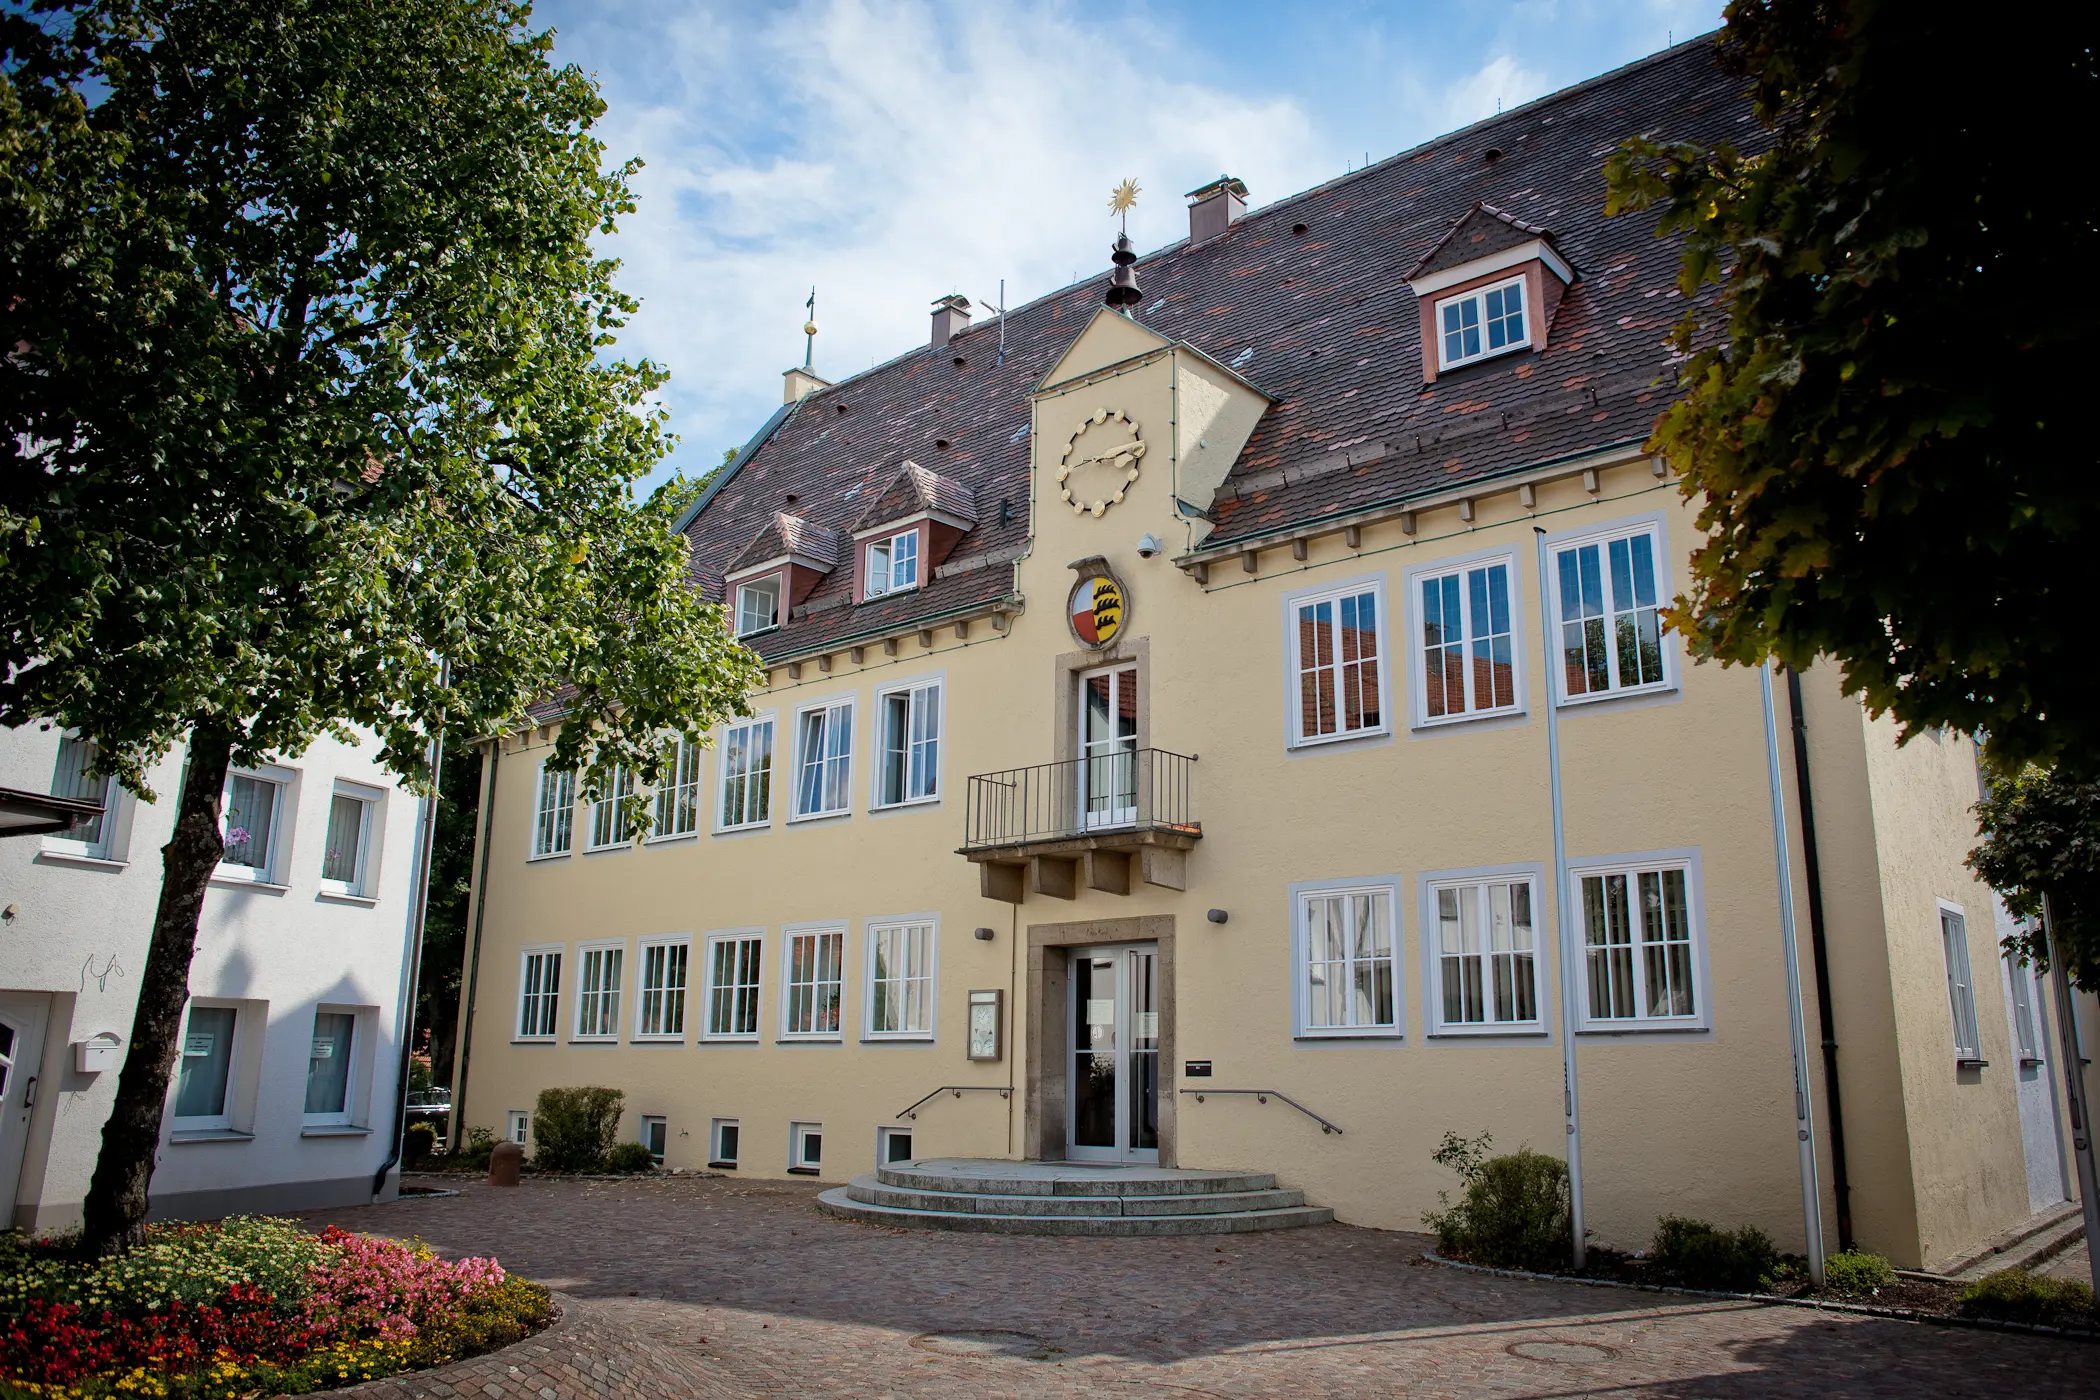 Auf dem Bild ist das gelbe Rathaus der Gemeinde Winterlingen zu sehen